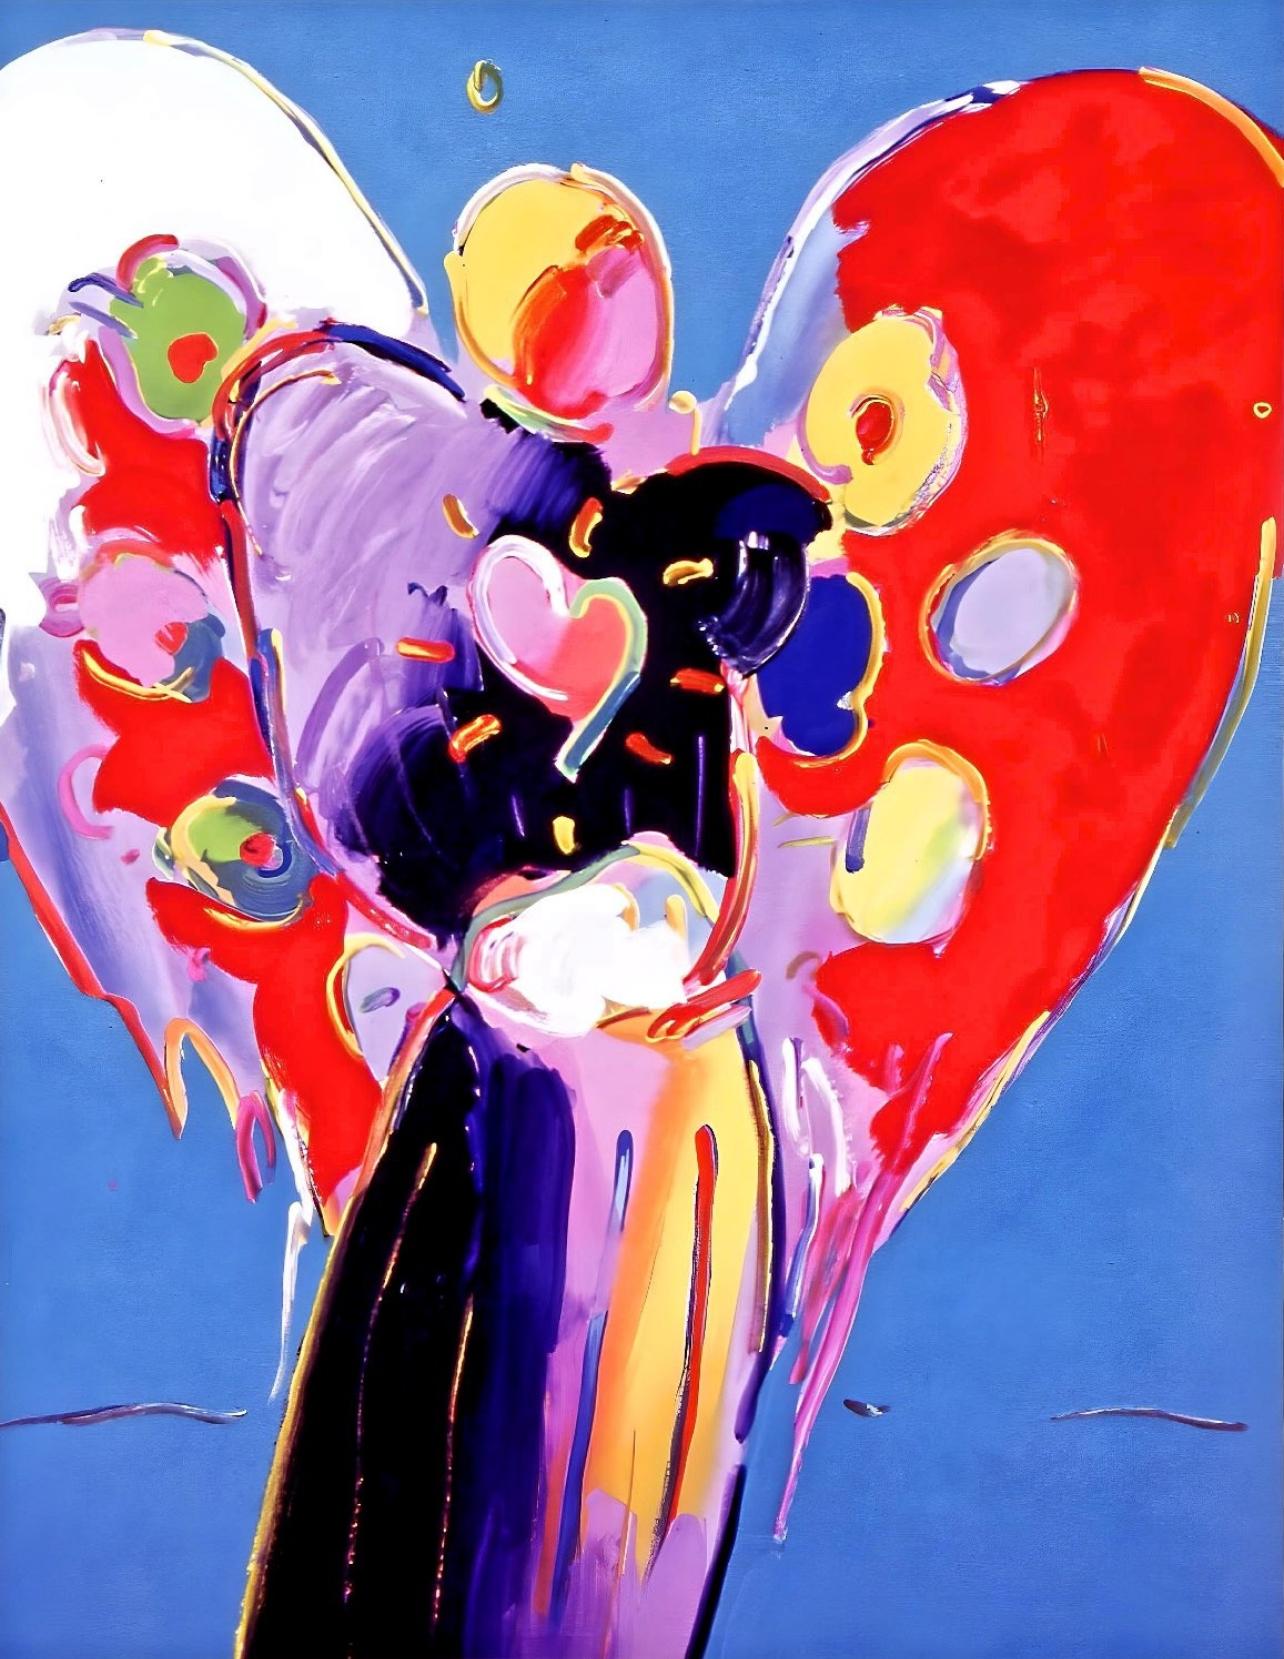 Künstler: Peter Max (1937)
Titel: Blauer Engel mit Herz
Jahr: 2003
Auflage: 500/500, plus Probedrucke
Medium: Lithographie auf Archivierungspapier
Größe: 11,31 x 7,88 Zoll
Zustand: Ausgezeichnet
Beschriftung: Signiert und nummeriert vom